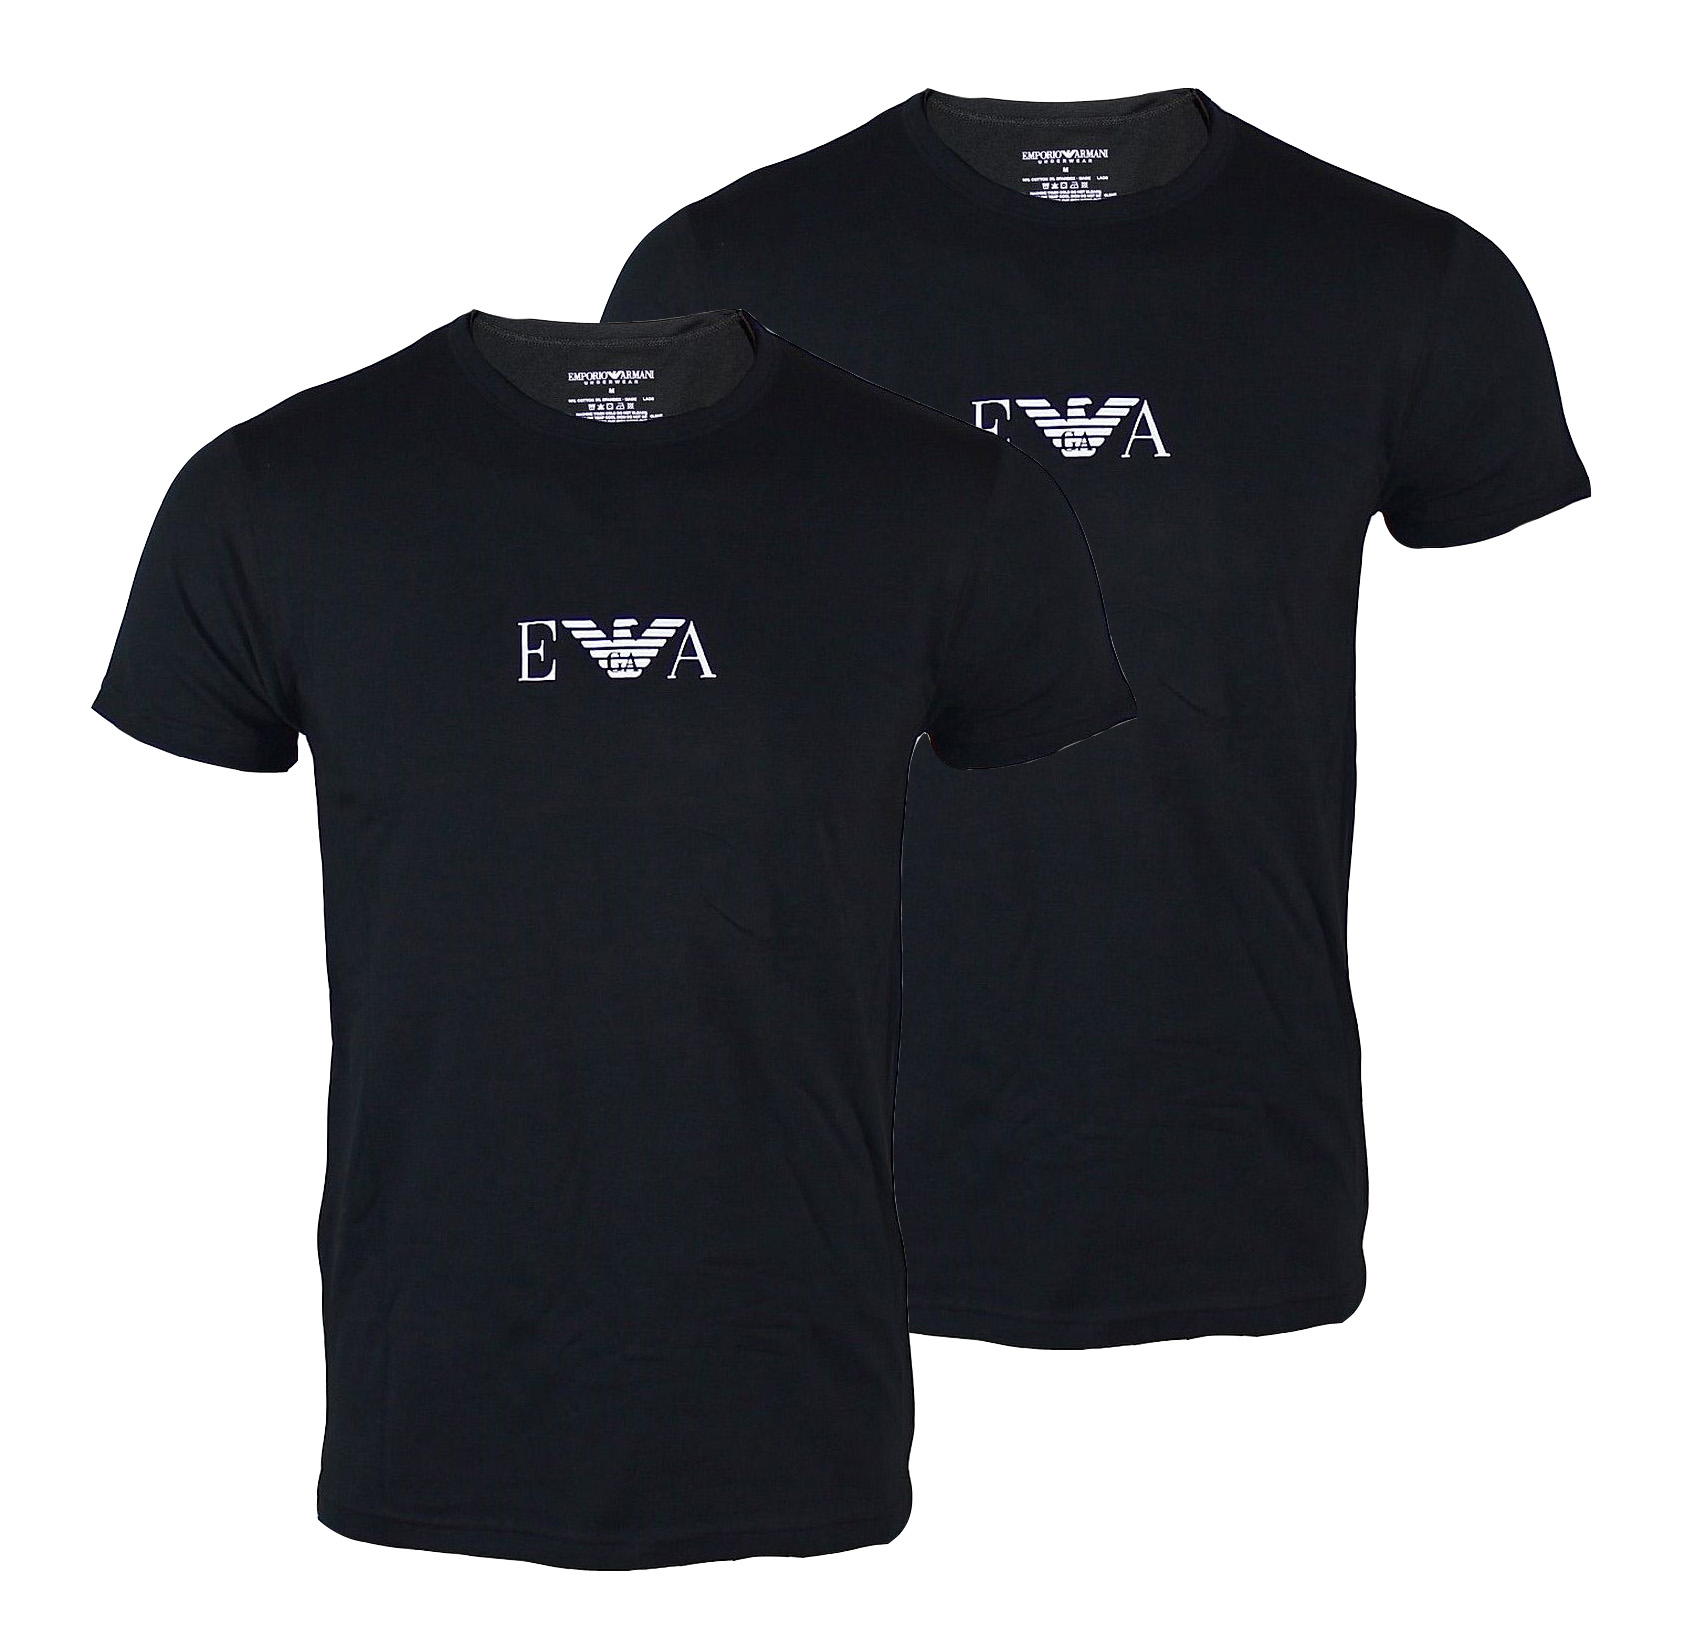 EMPORIO ARMANI 2er Pack Shirt T-Shirt Mod. CC715 111267 07320 Rundhals schwarz